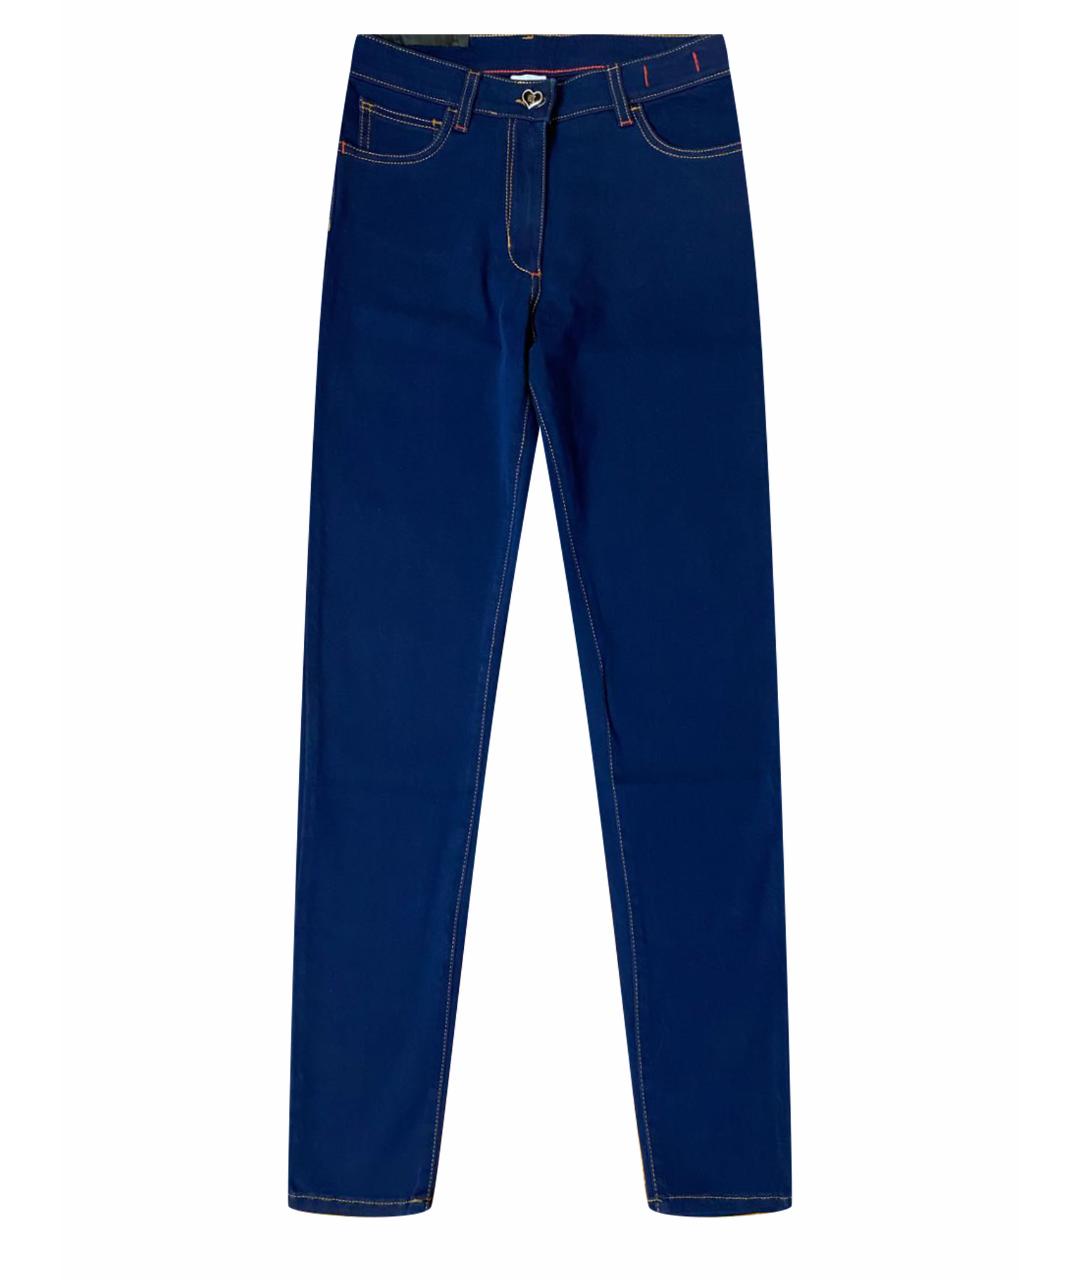 TWIN-SET Синие хлопок-полиэтиленовые джинсы слим, фото 1